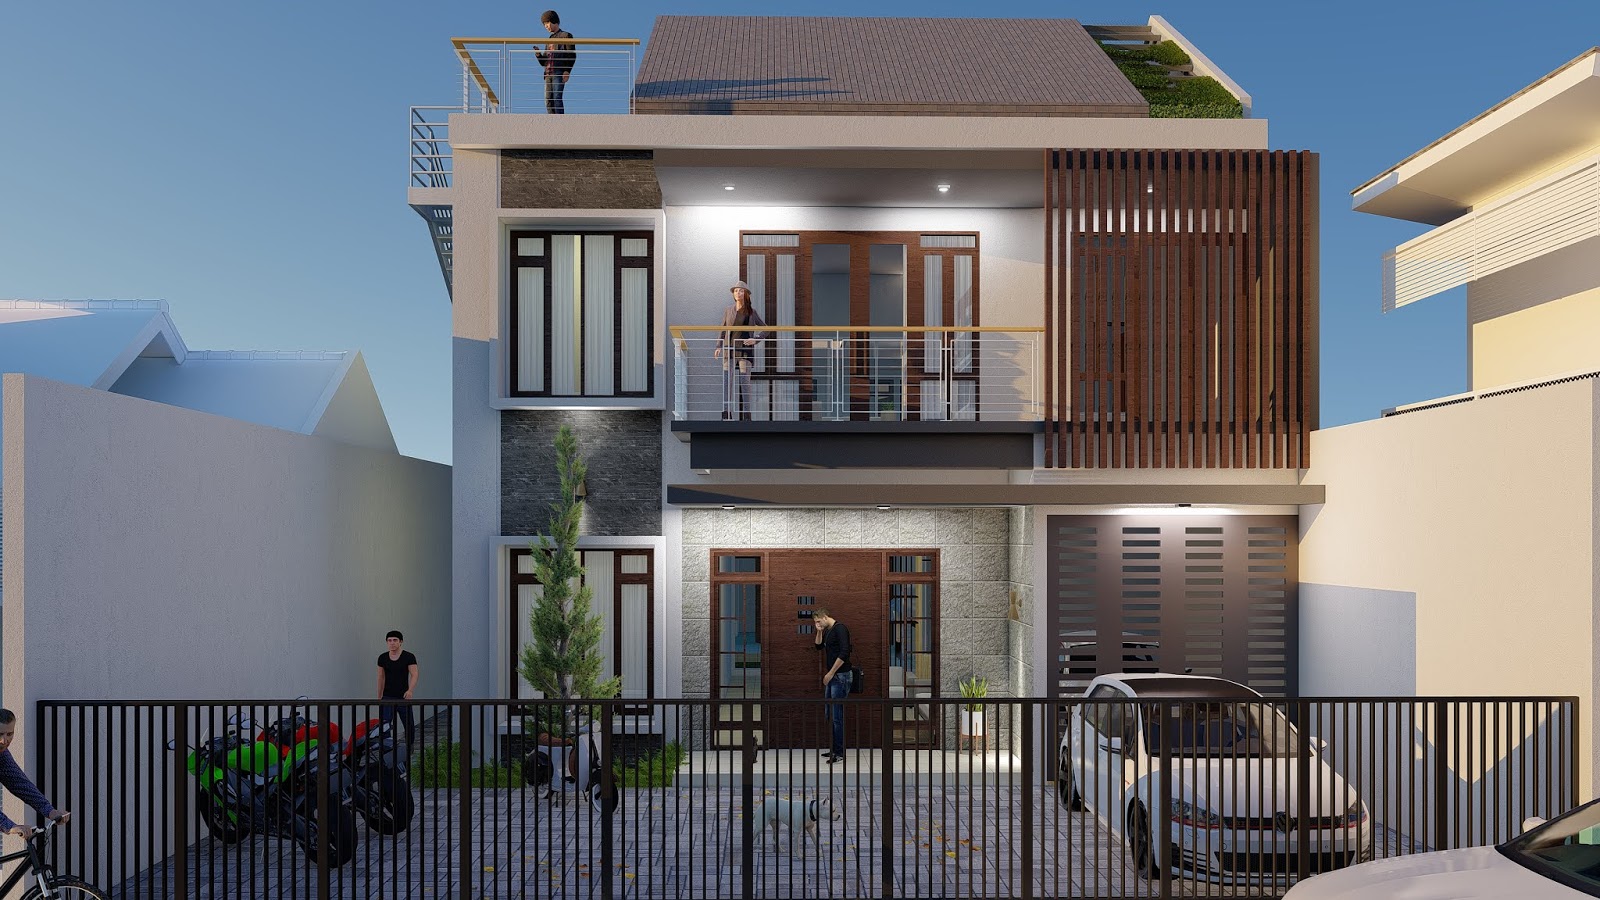 Fasad Rumah Kost 2 Lantai Situs Properti Indonesia